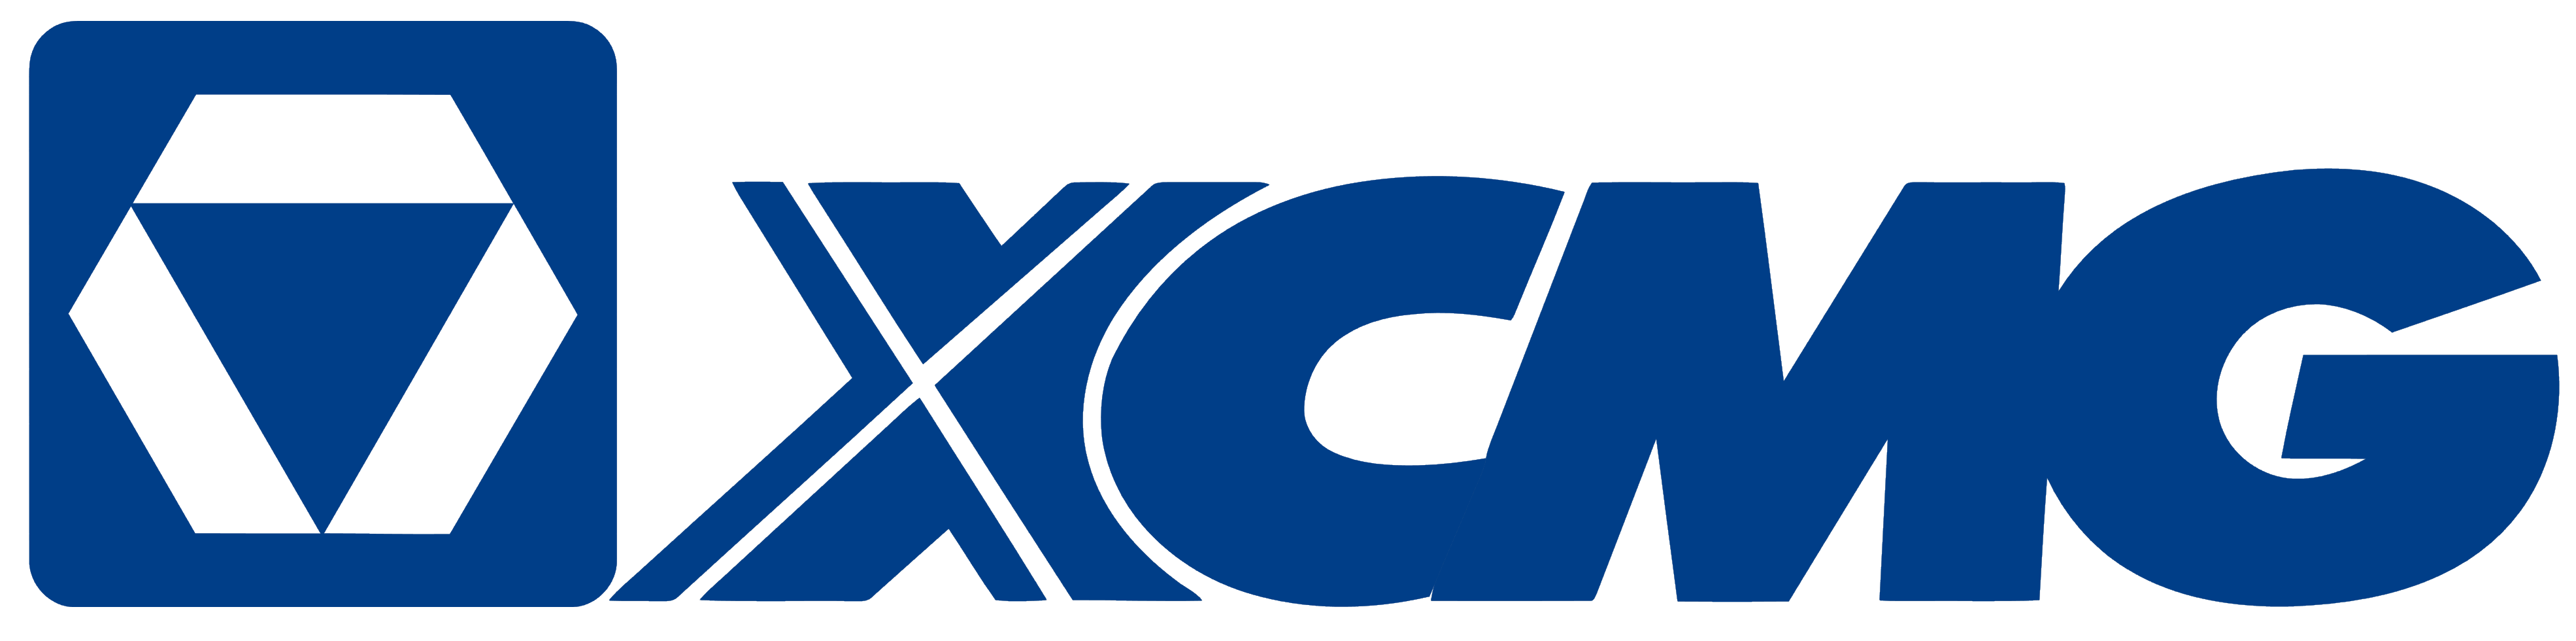 xcmg logo